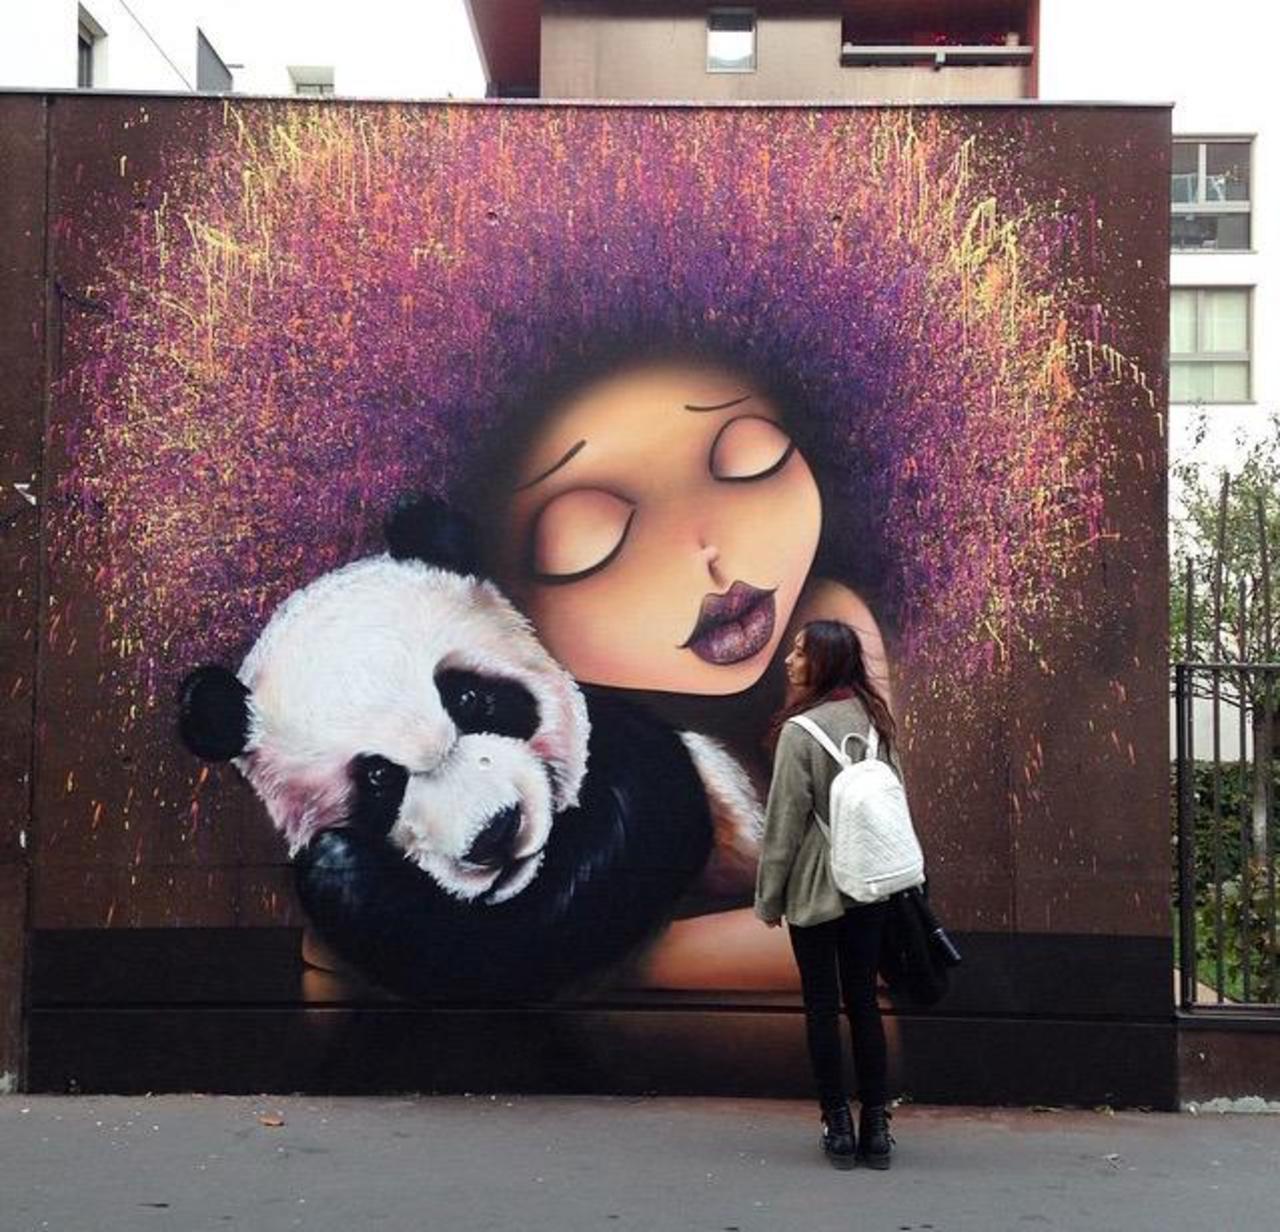 Street Art by VinieGraffiti in Paris 

#art #graffiti #mural #streetart http://t.co/u1jlNccfx8